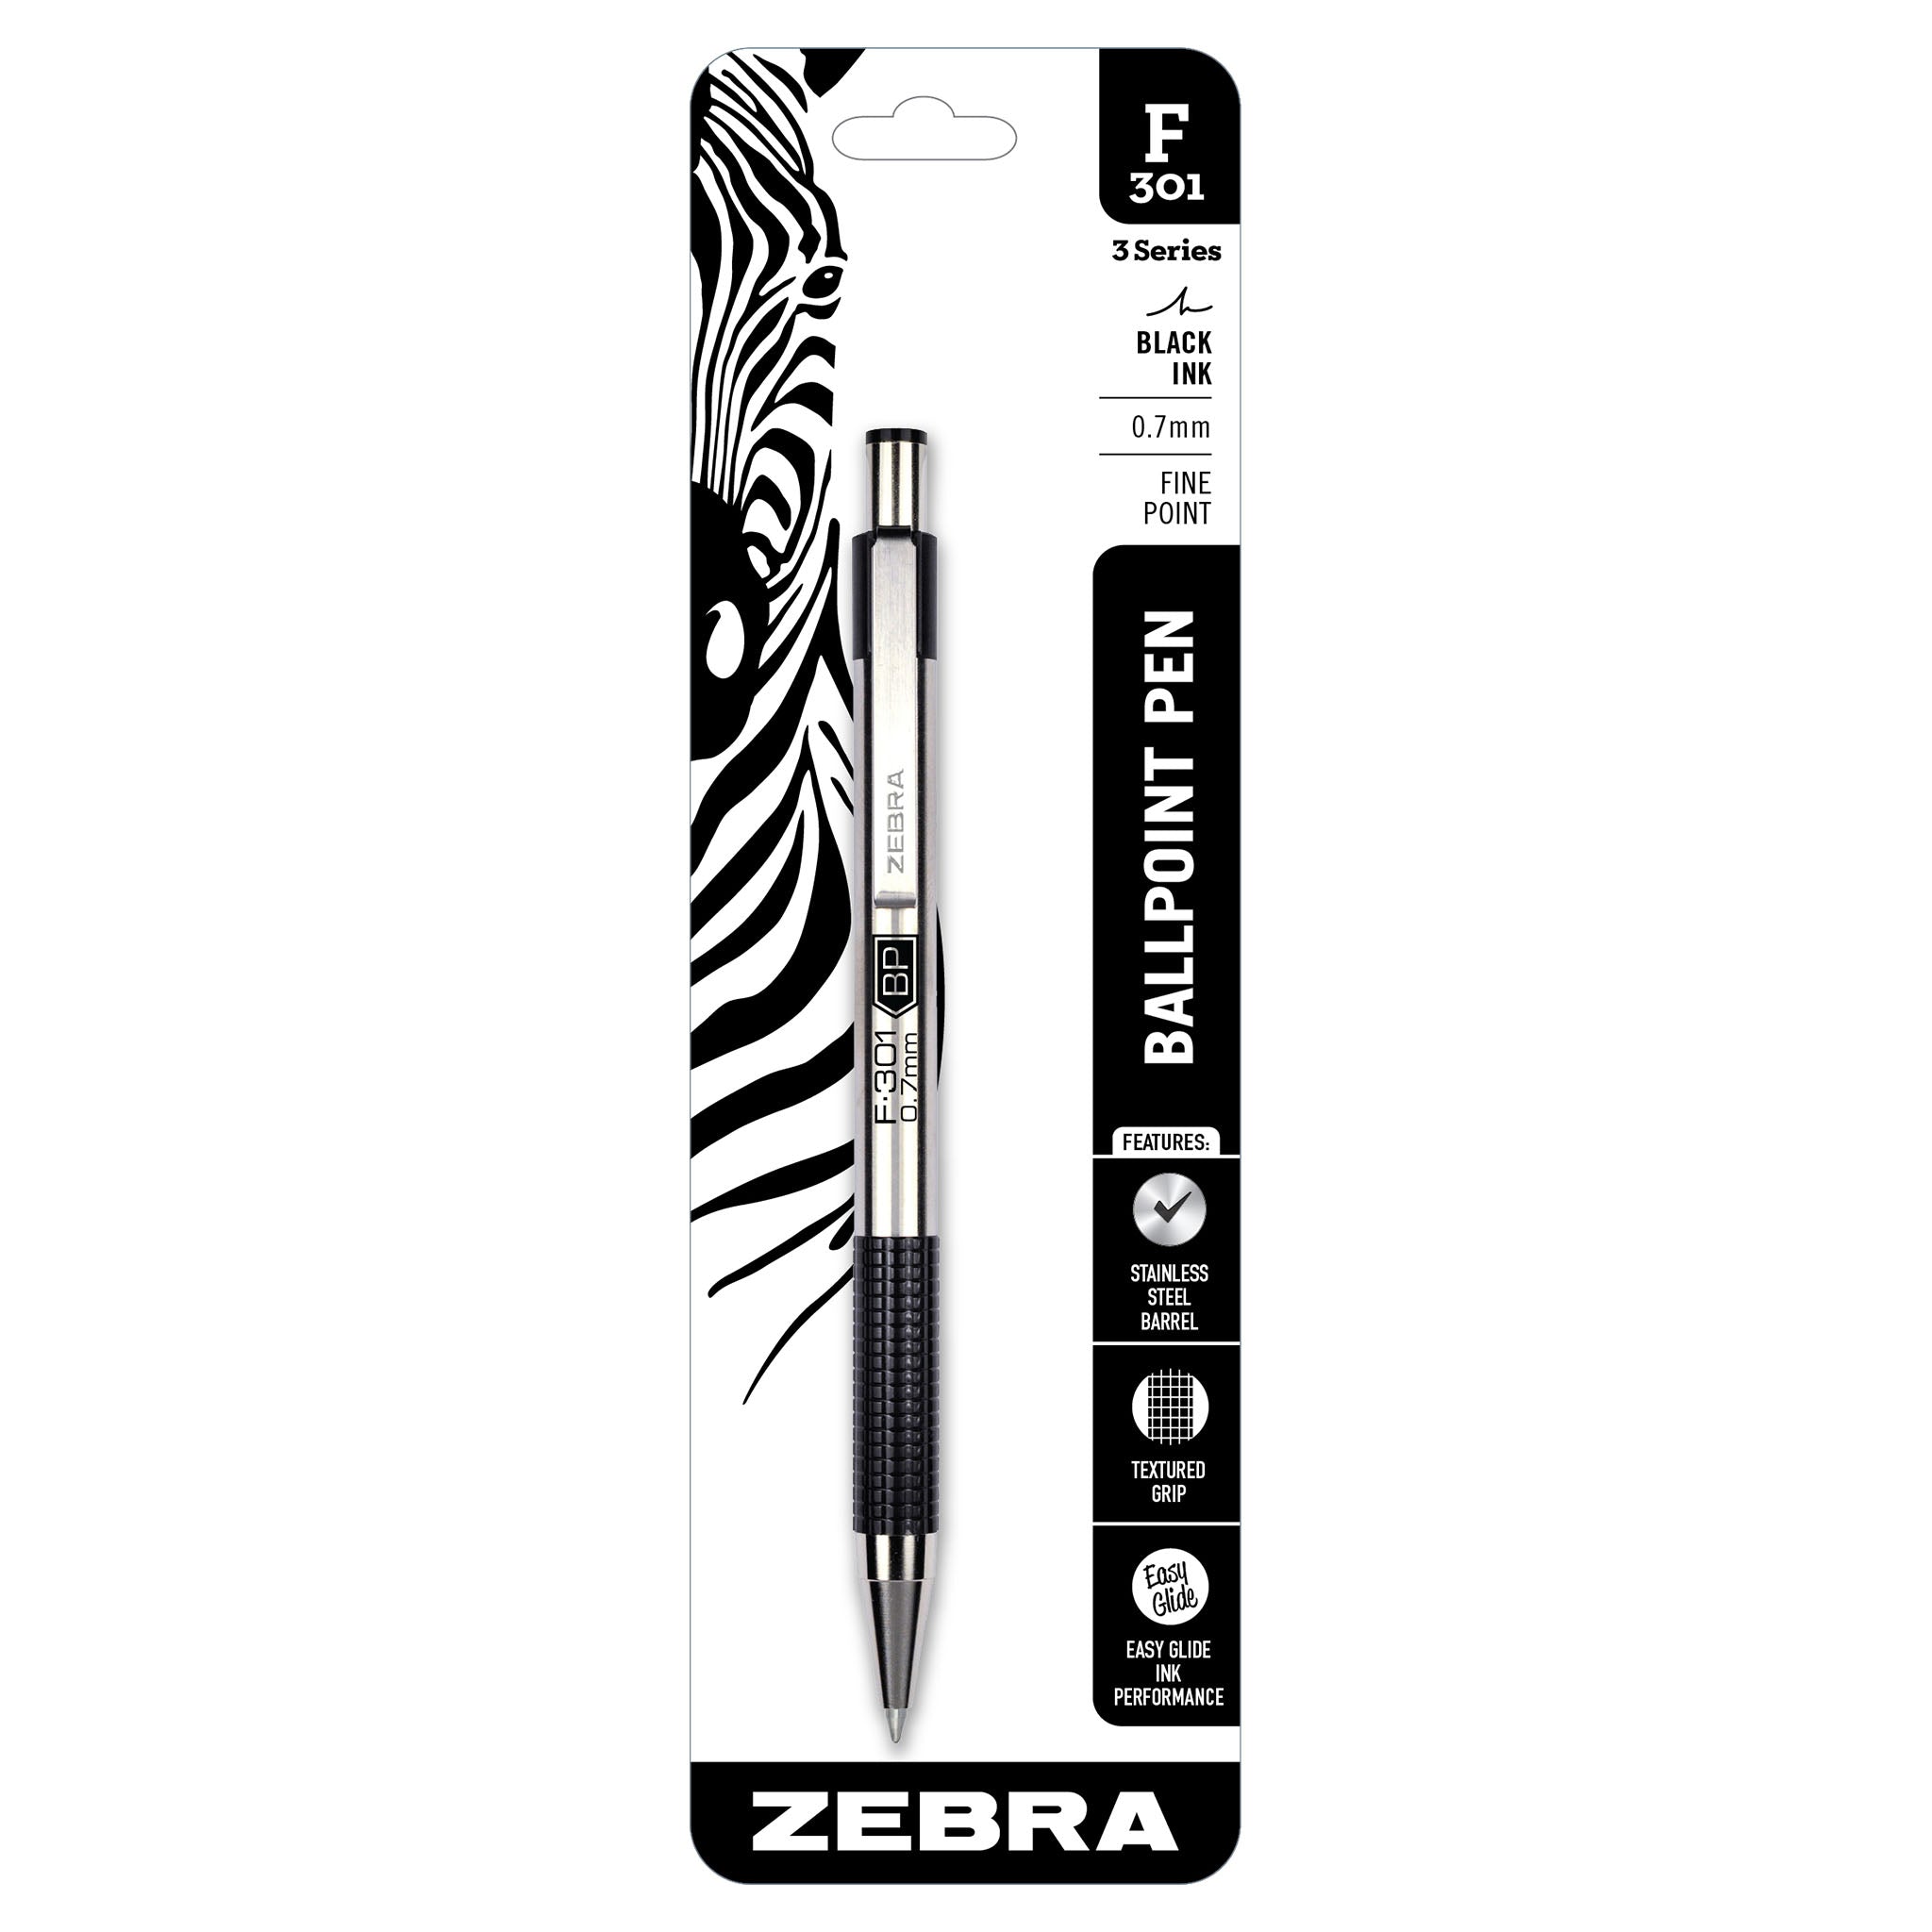 Zebra Fine Point F-301 Ball Point Pen - 4 Pack - Multi-Color, 4 pk